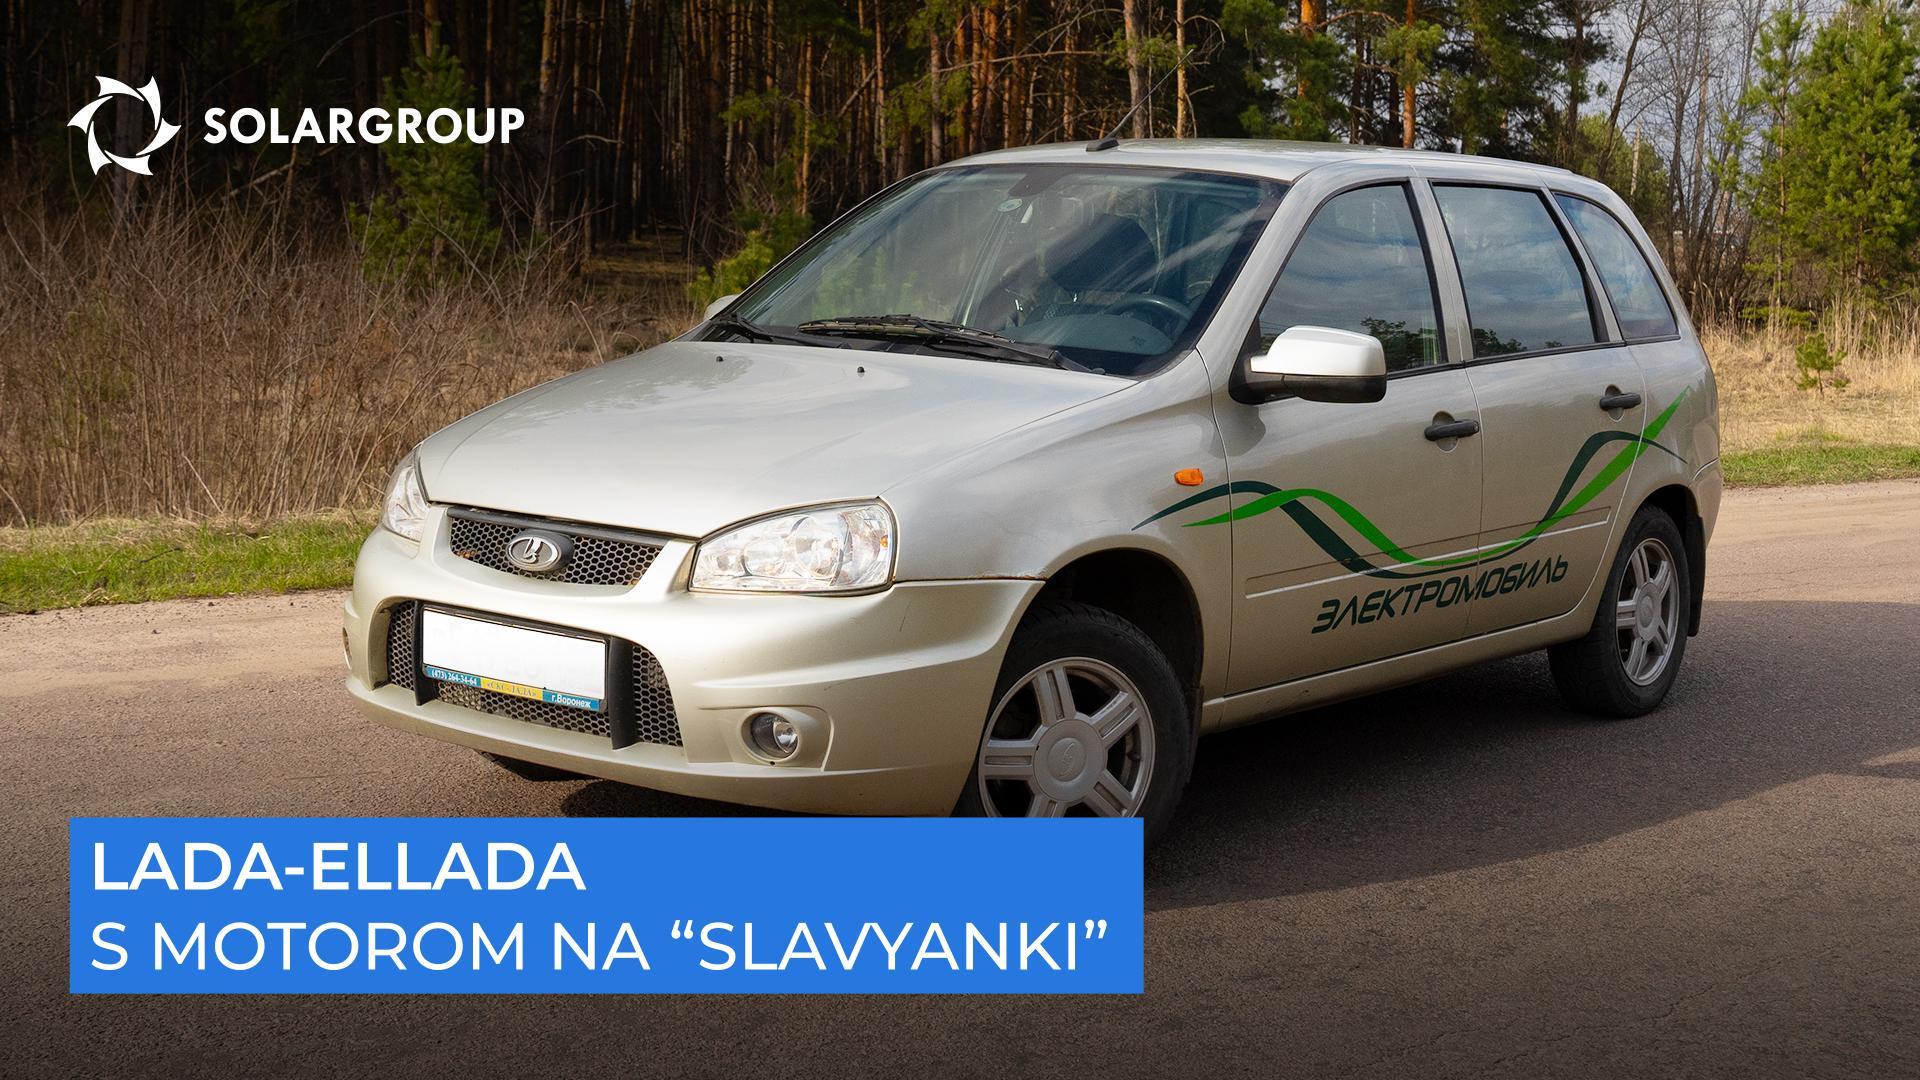 Brz, tih i izdržljiv: što su pokazala ispitivanja električnog automobila na "Slavyanki"?